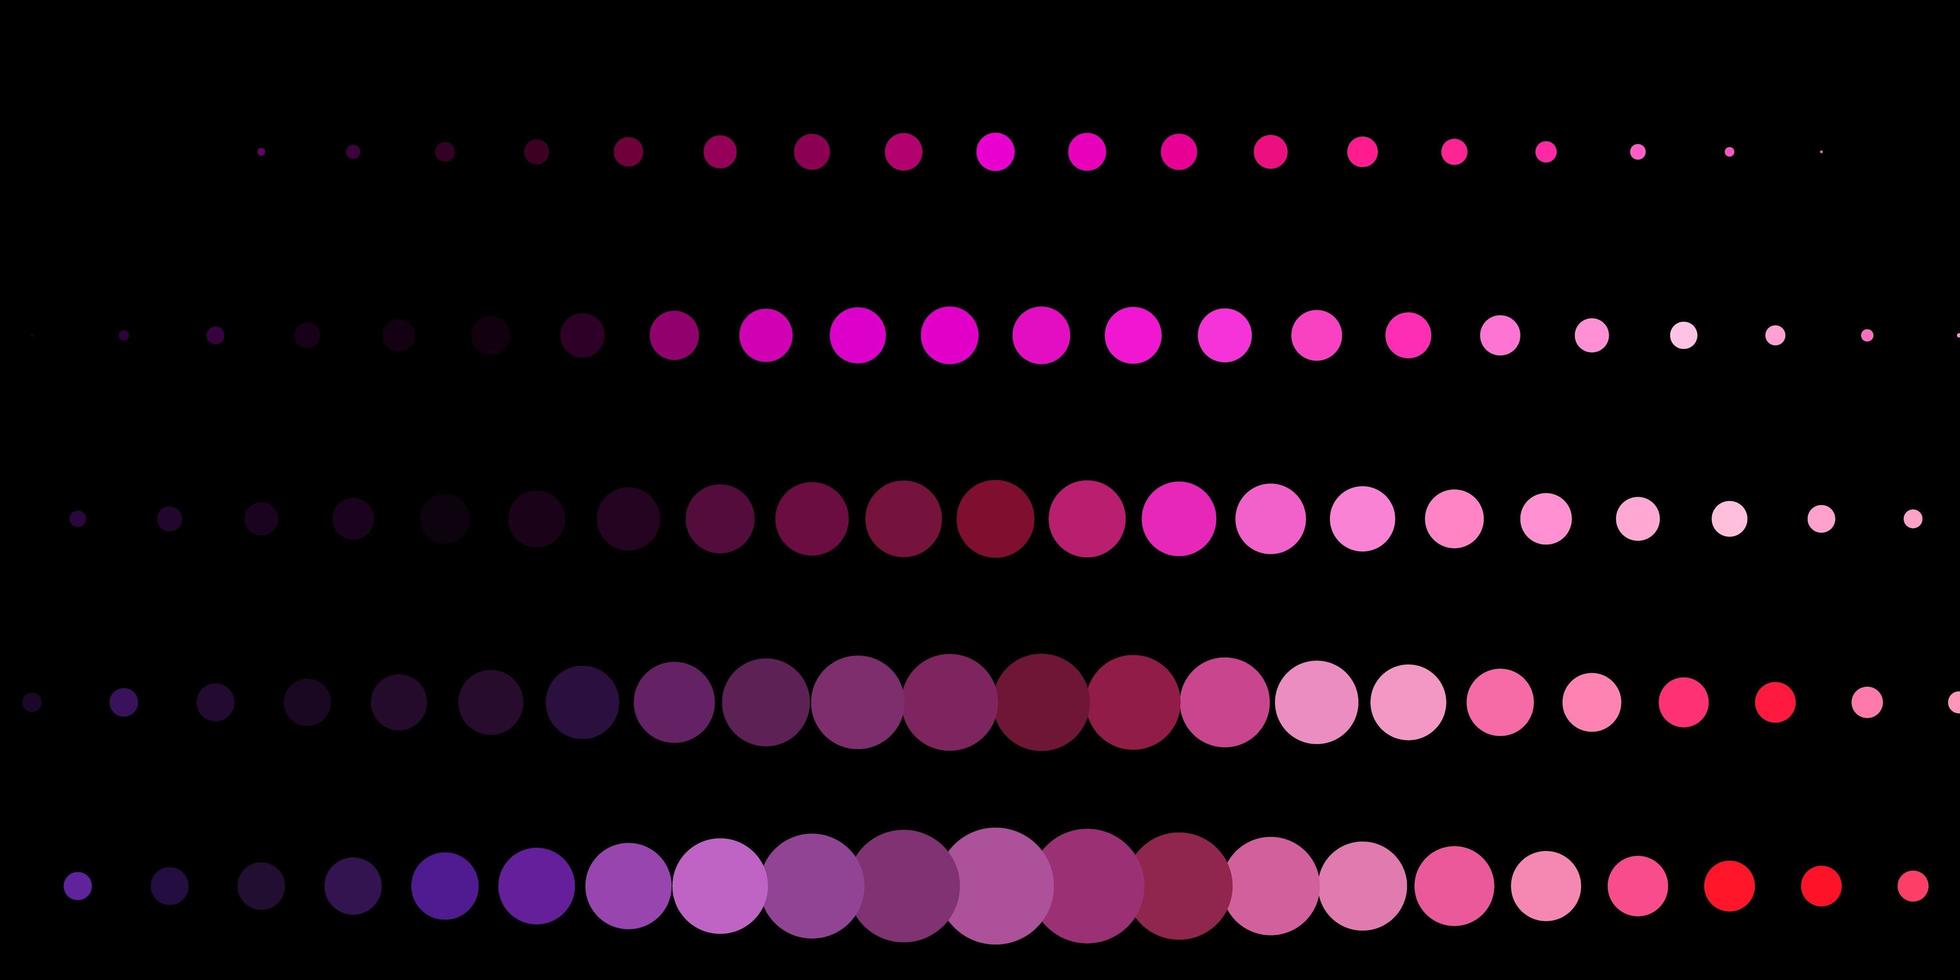 padrão de vetor roxo, rosa escuro com esferas.